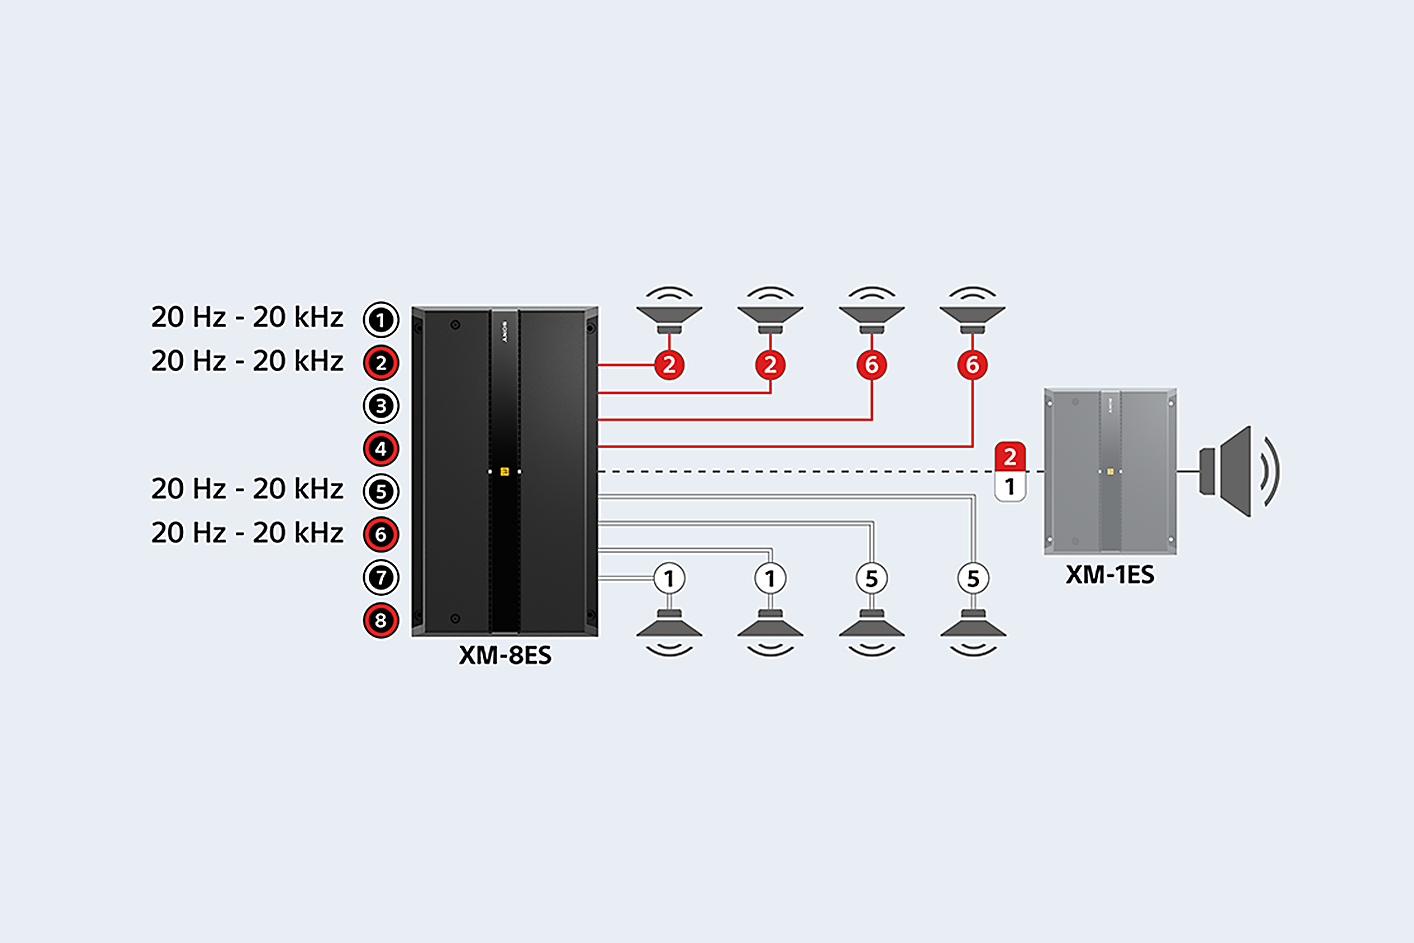 แผนผังของ XM-8ES ที่เชื่อมต่อกับลำโพงแปดตัวและ XM-1ES และการตั้งค่าเสียงที่แสดงให้เห็นถัดจากพอร์ต 1, 2, 5 และ 6